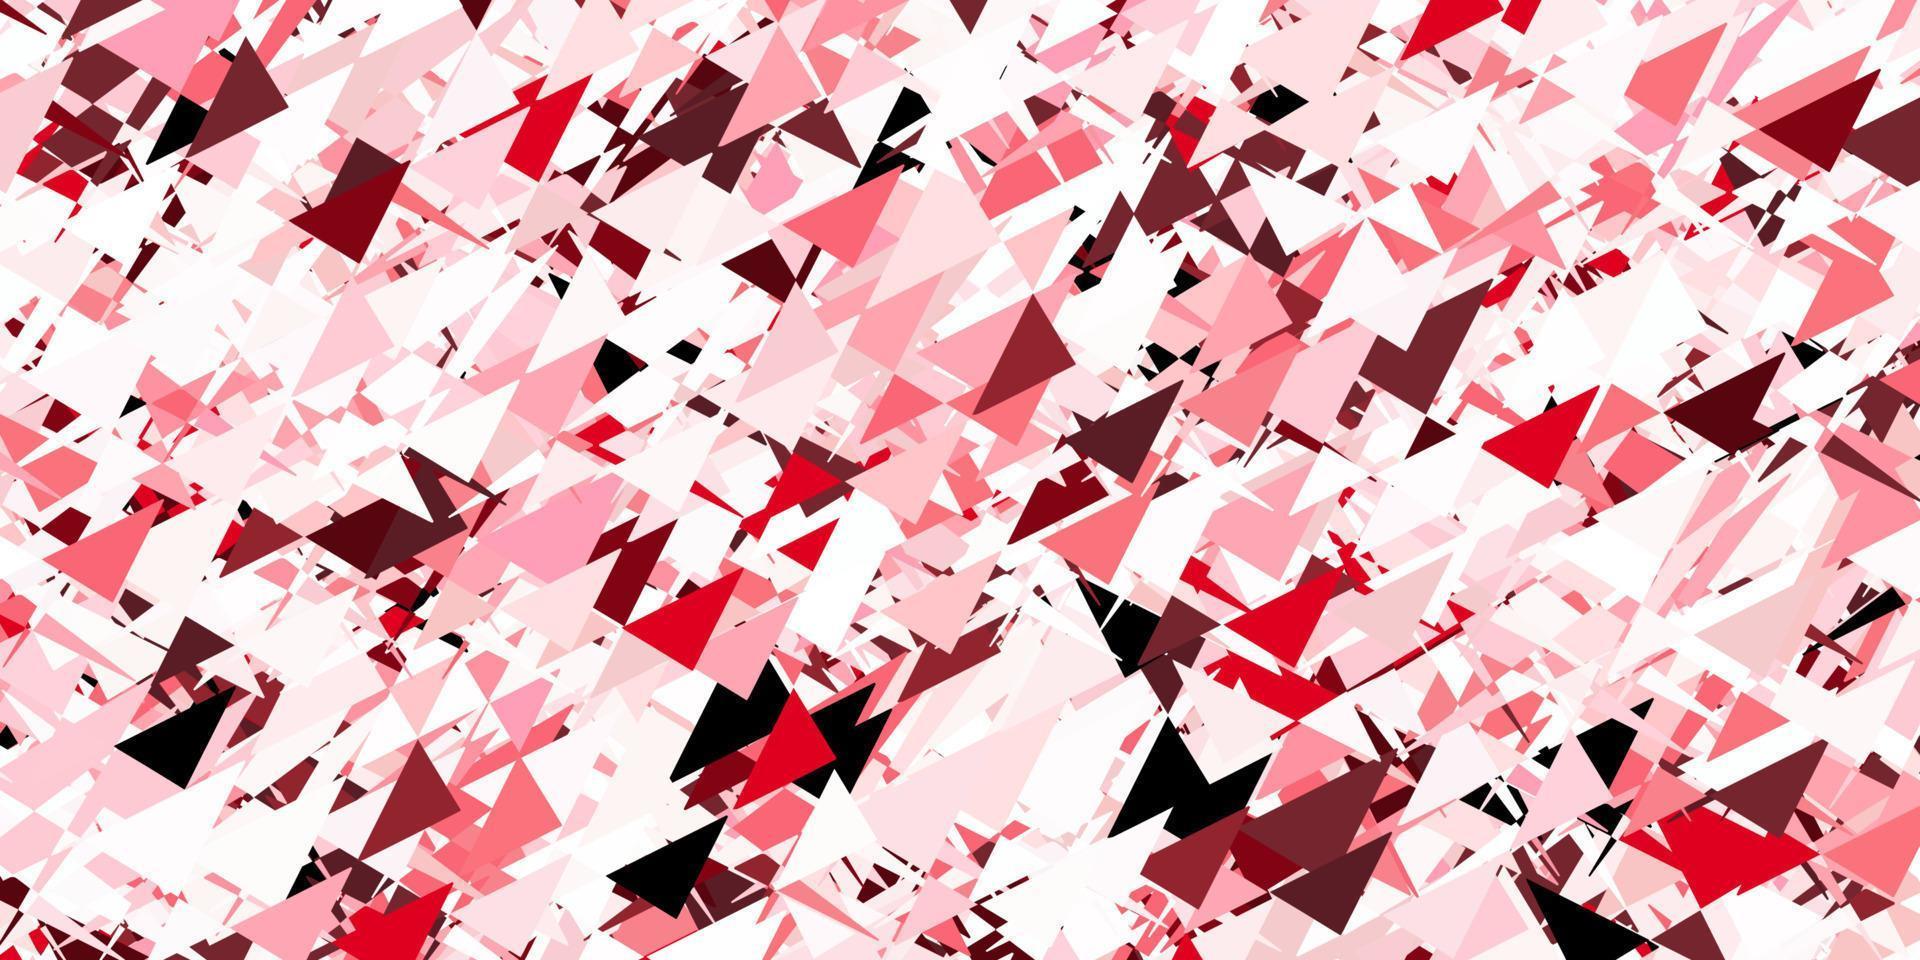 layout de vetor rosa claro e vermelho com formas triangulares.